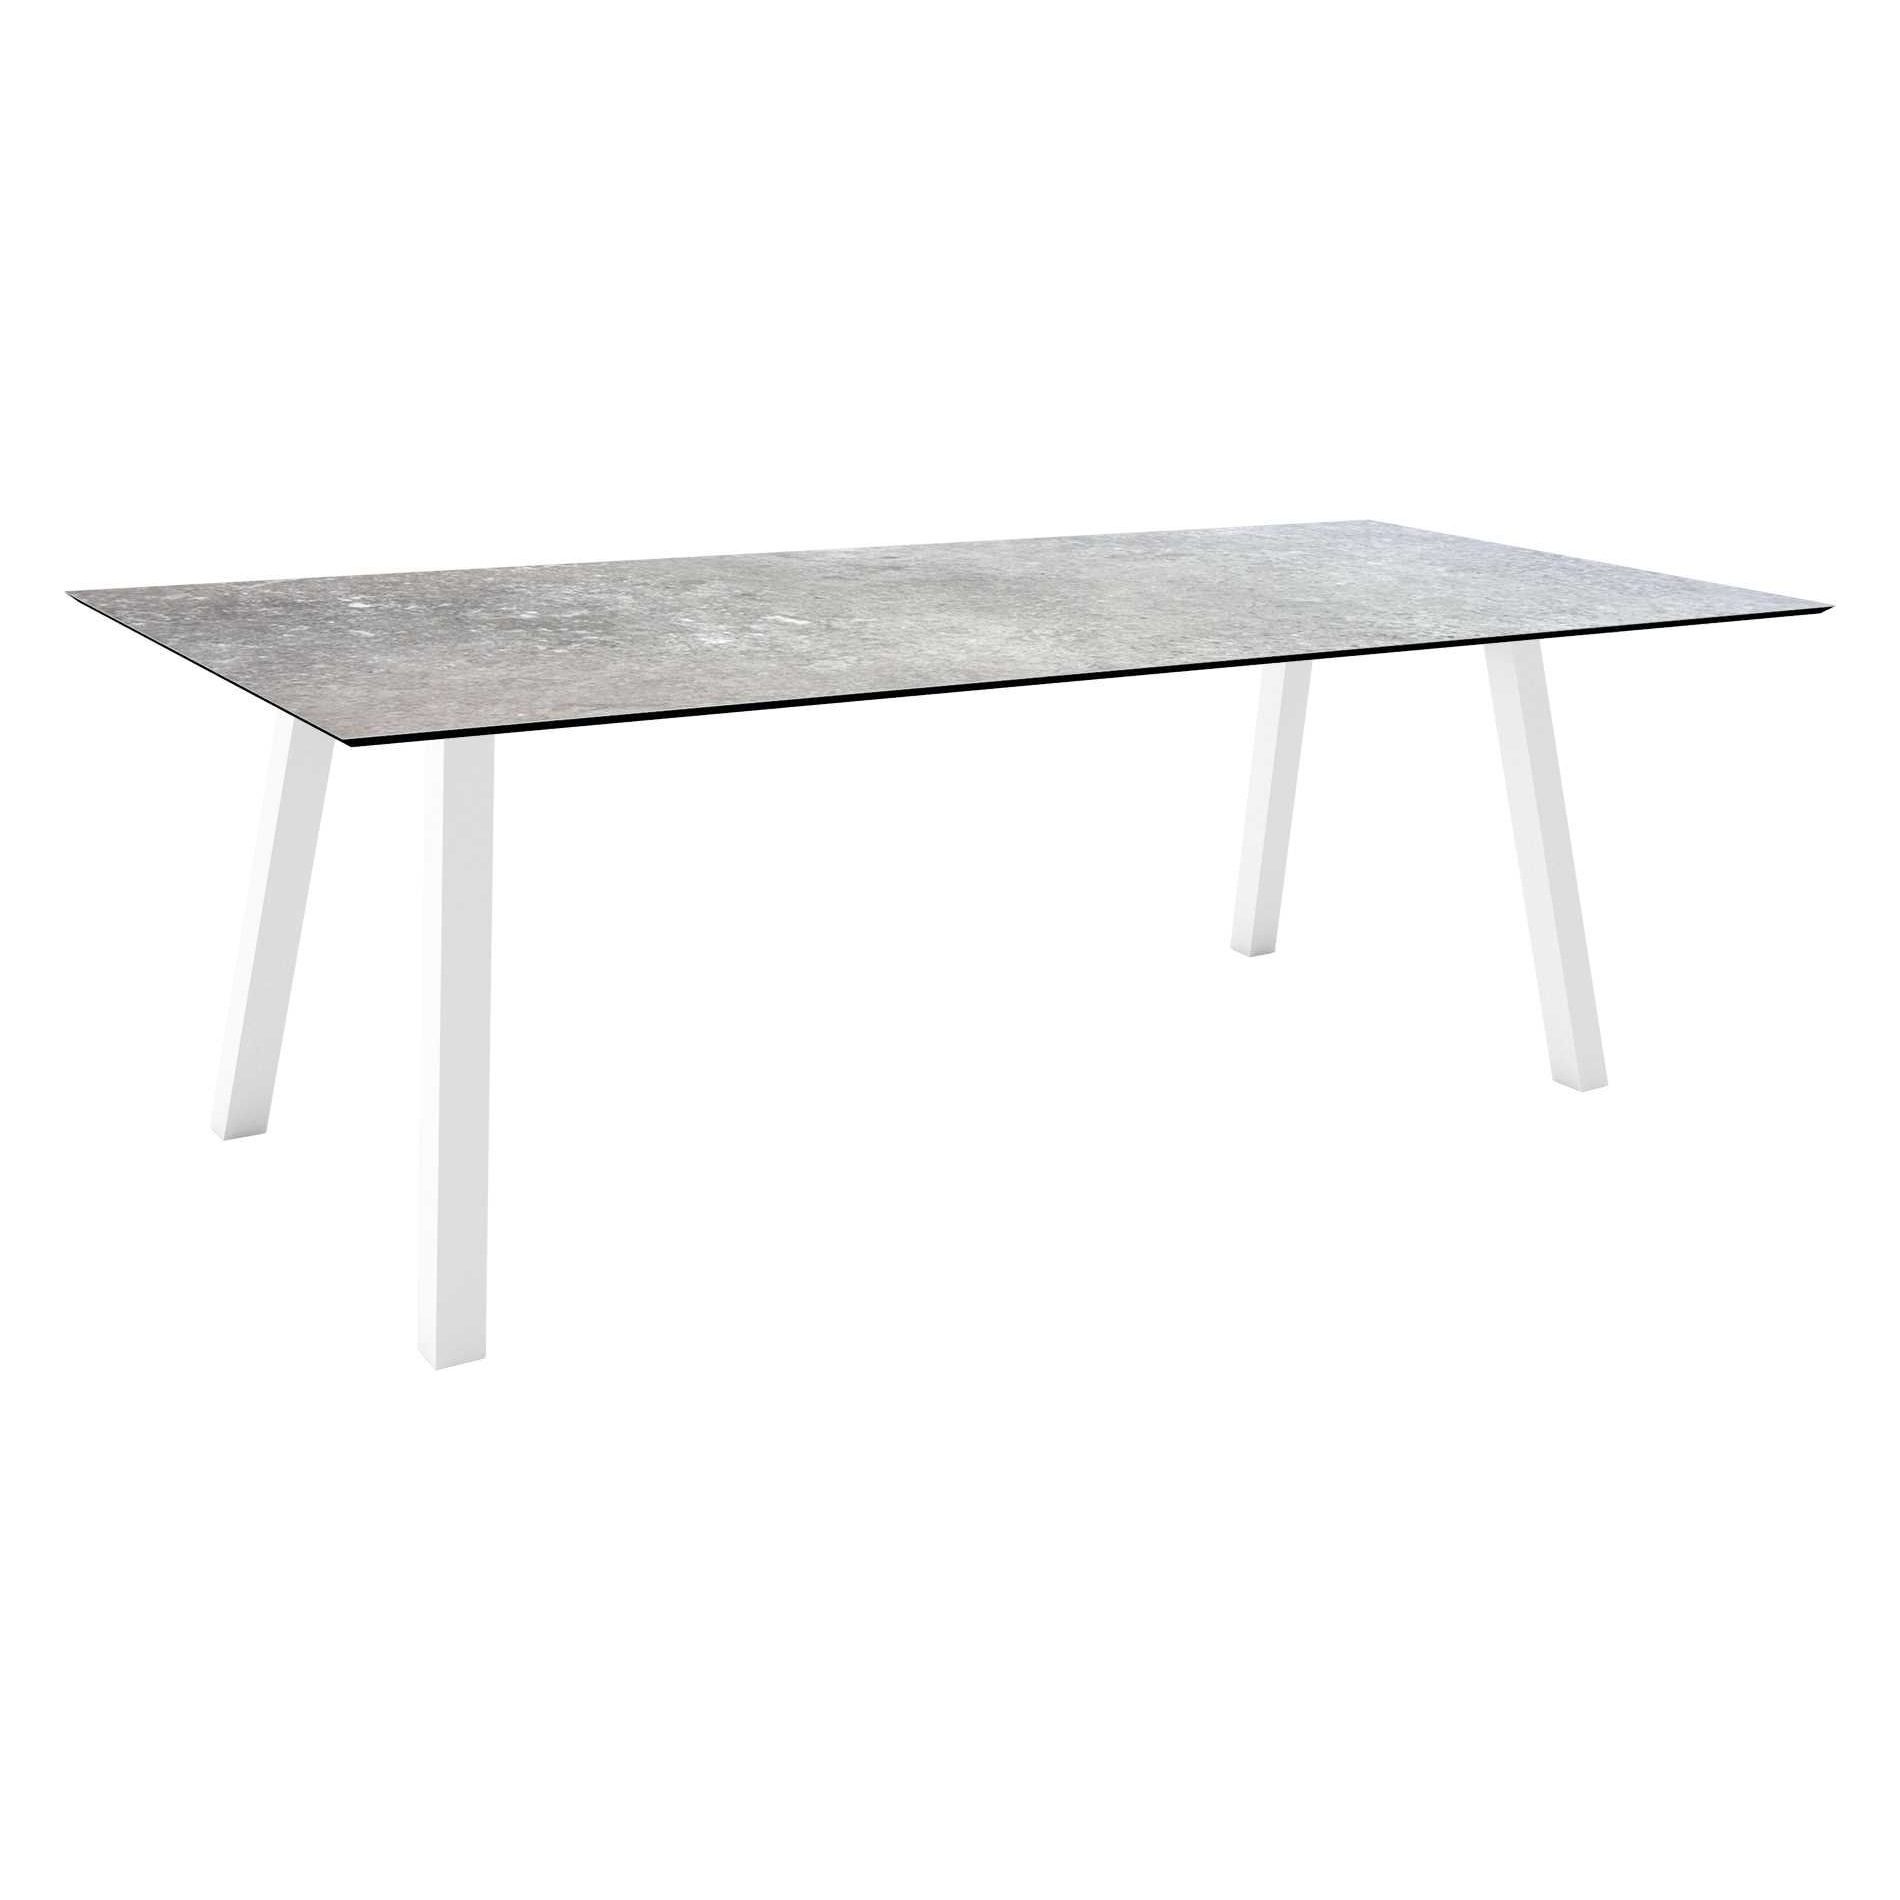 Stern Tisch "Interno", Größe 220x100cm, Alu weiß, Vierkantrohr, Tischplatte HPL Vintage Stone